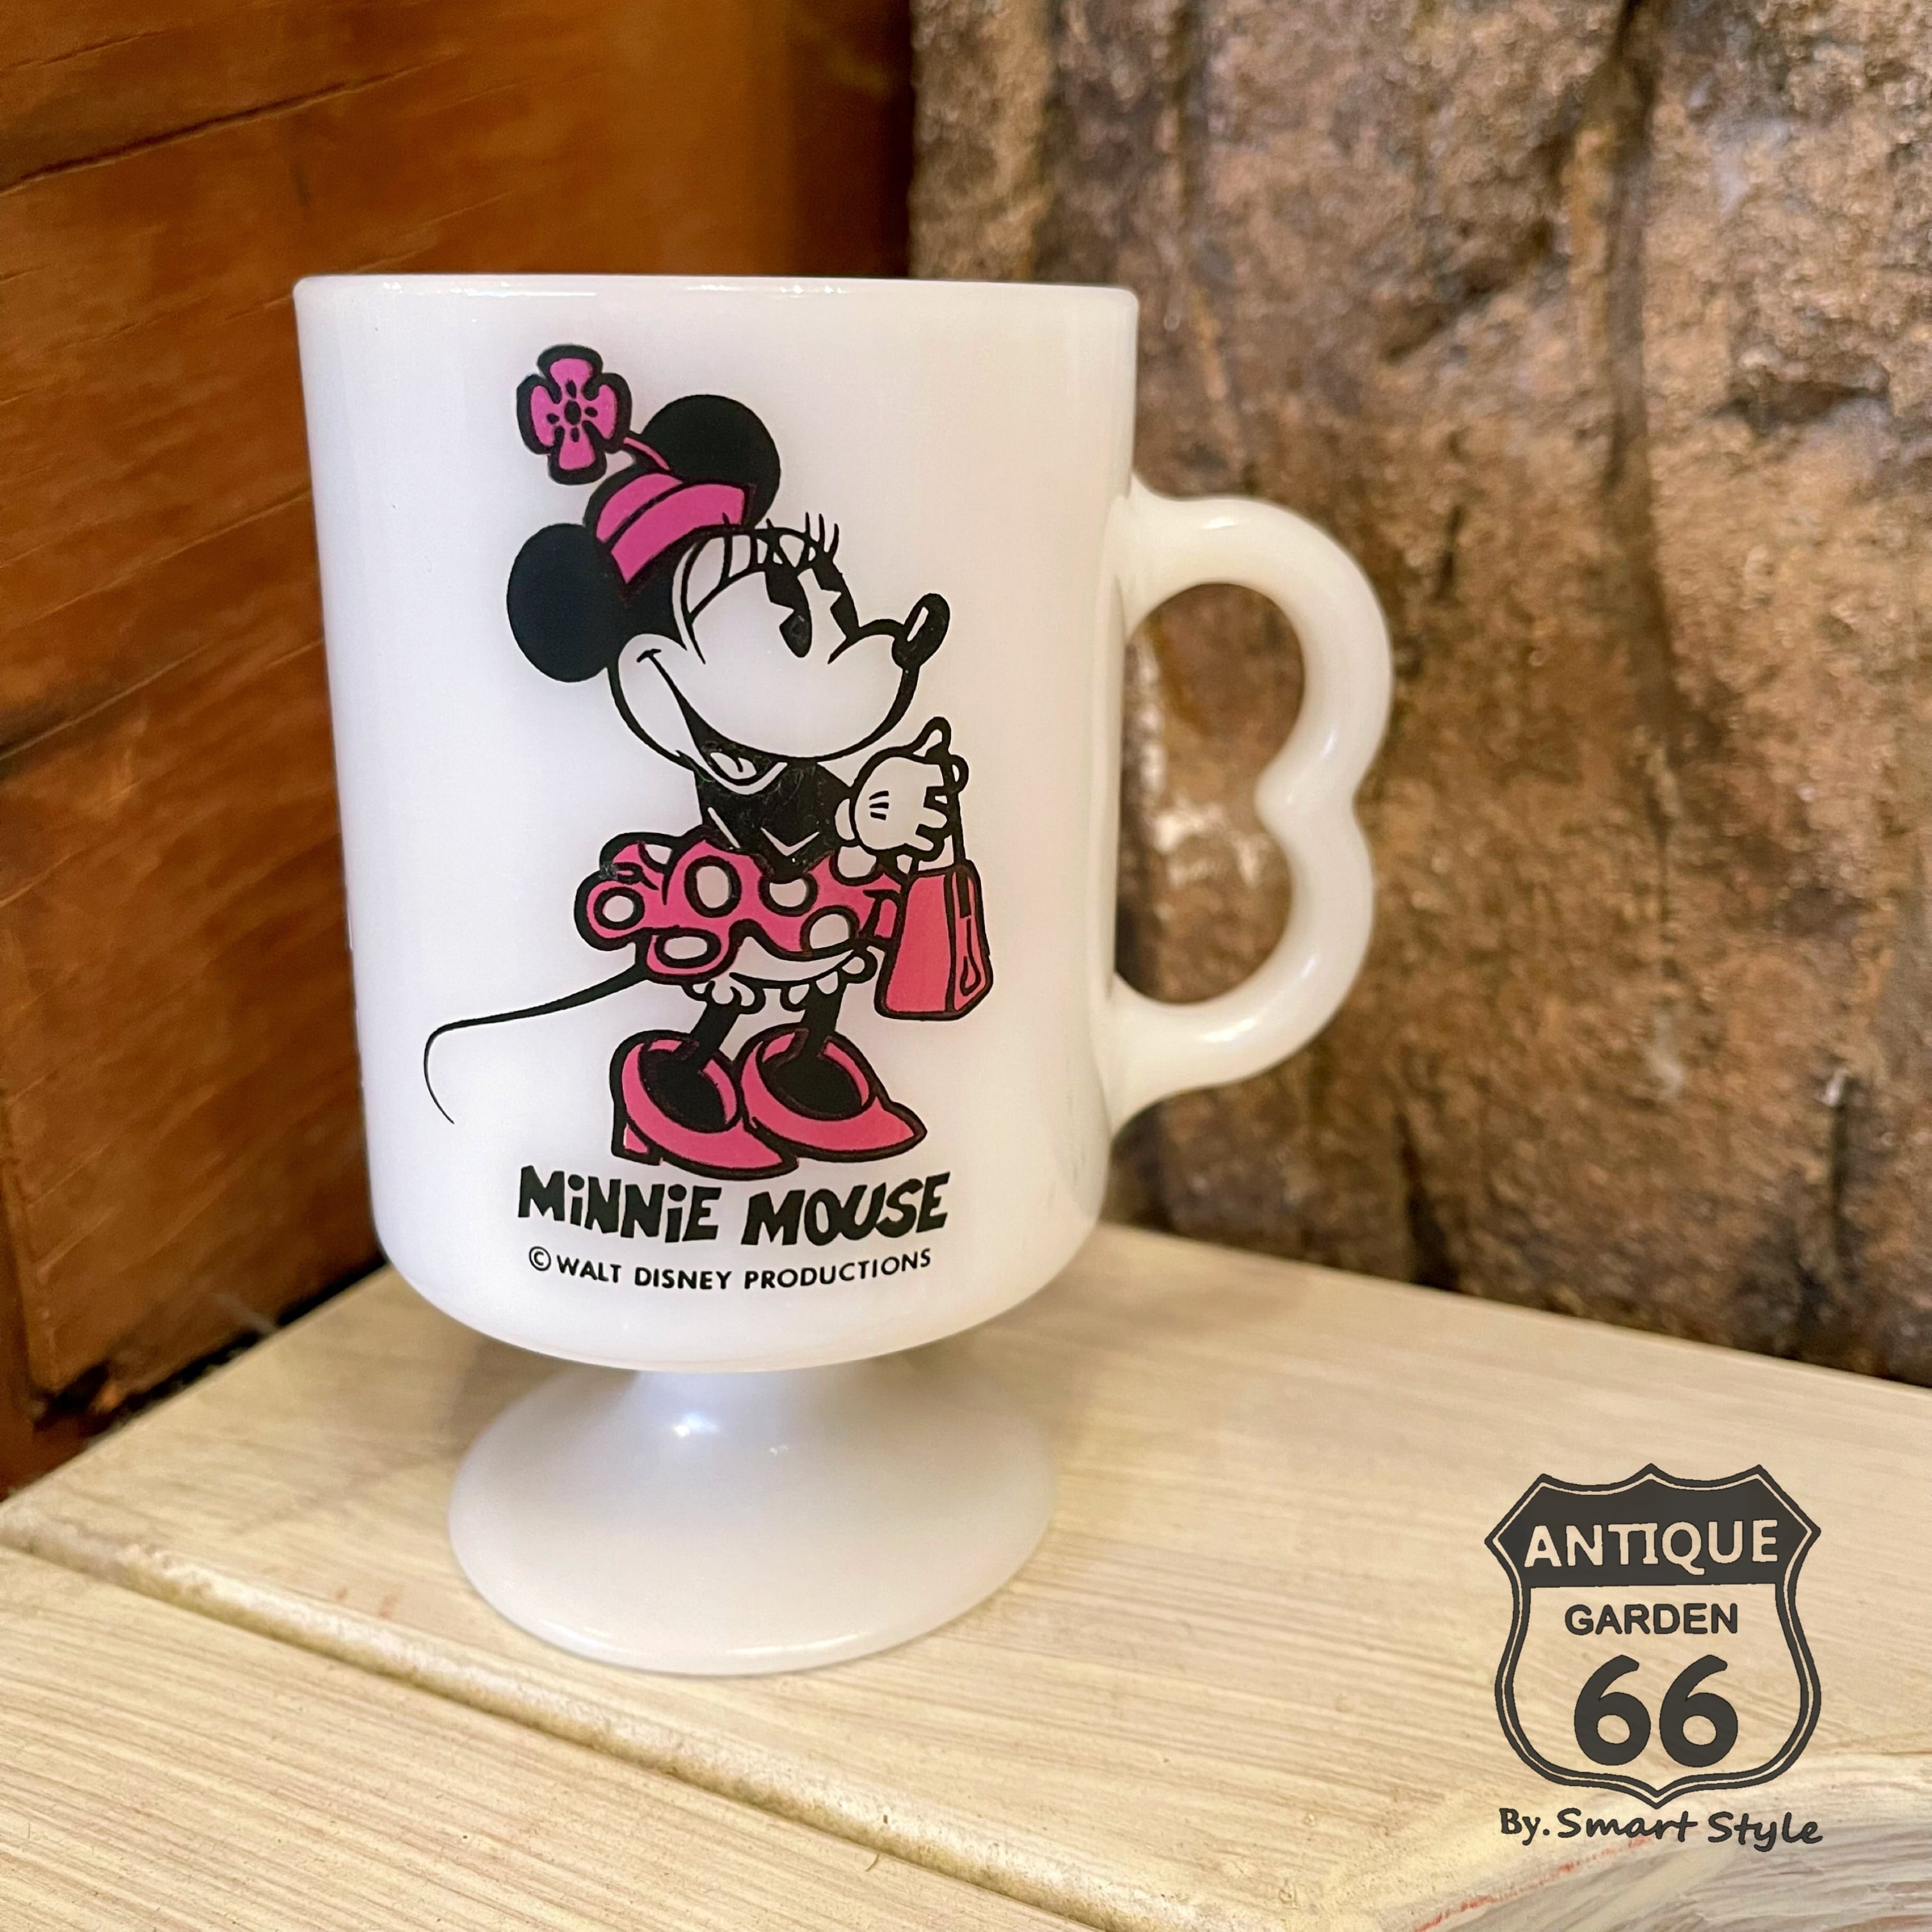 フェデラル Minnie Mouse ミニーマウス 足付き グラス型 Bハンドル マグカップ アメリカ ヴィンテージ FEDERAL  ミルクガラス【K-088a-012】 Antique Style～【アンスタ】アメリカ買付けのヴィンテージ・アンティークのおみせ。